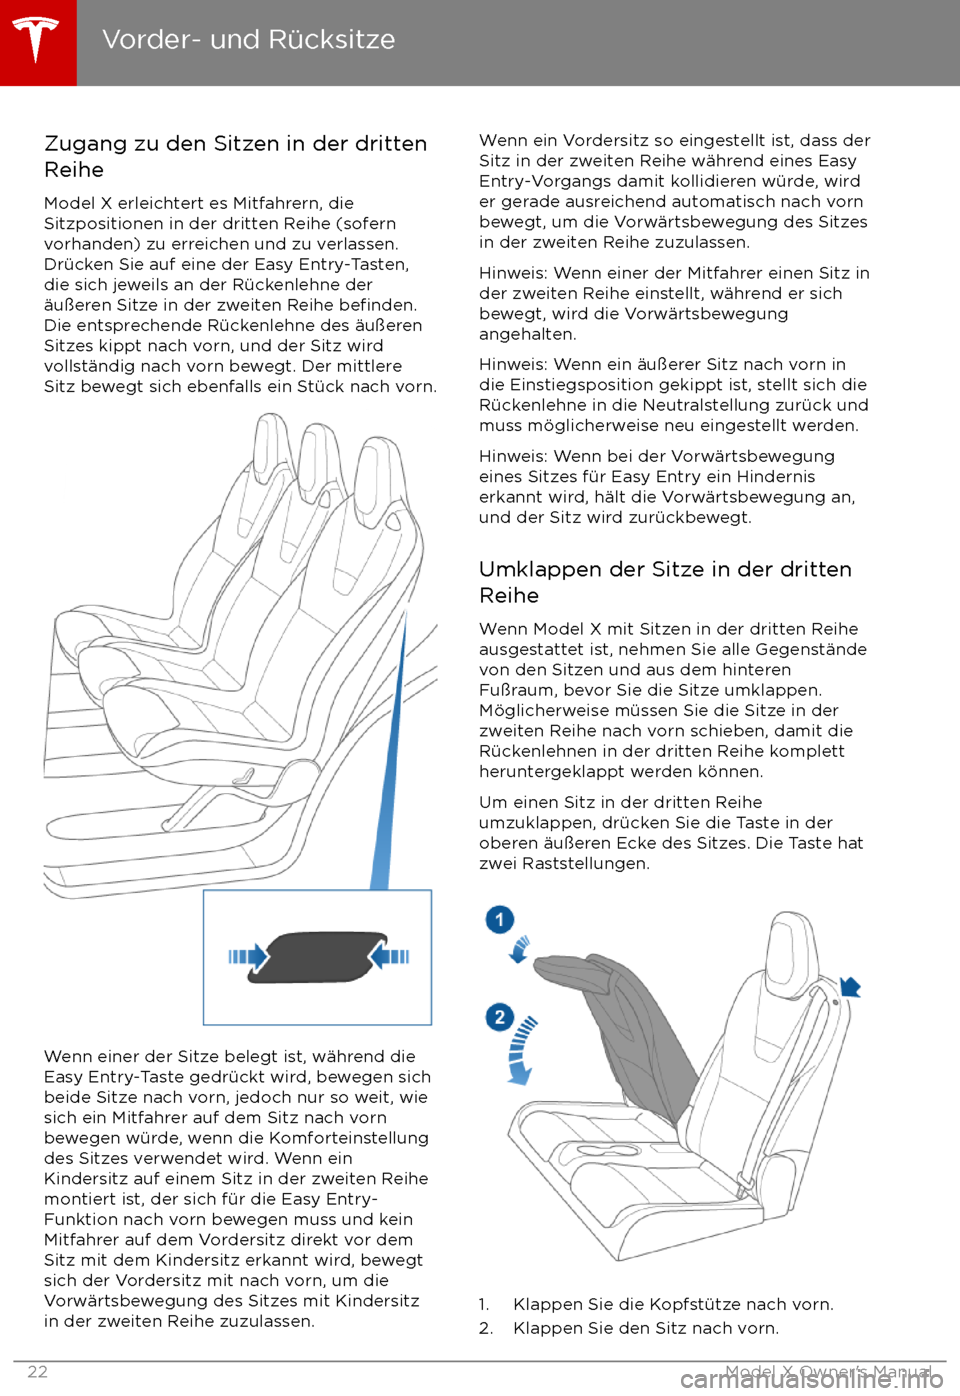 TESLA MODEL X 2017  Betriebsanleitung (in German) Zugang zu den Sitzen in der dritten
Reihe
Model X erleichtert es Mitfahrern, die
Sitzpositionen in der dritten Reihe (sofern
vorhanden) zu erreichen und zu verlassen.
Dr